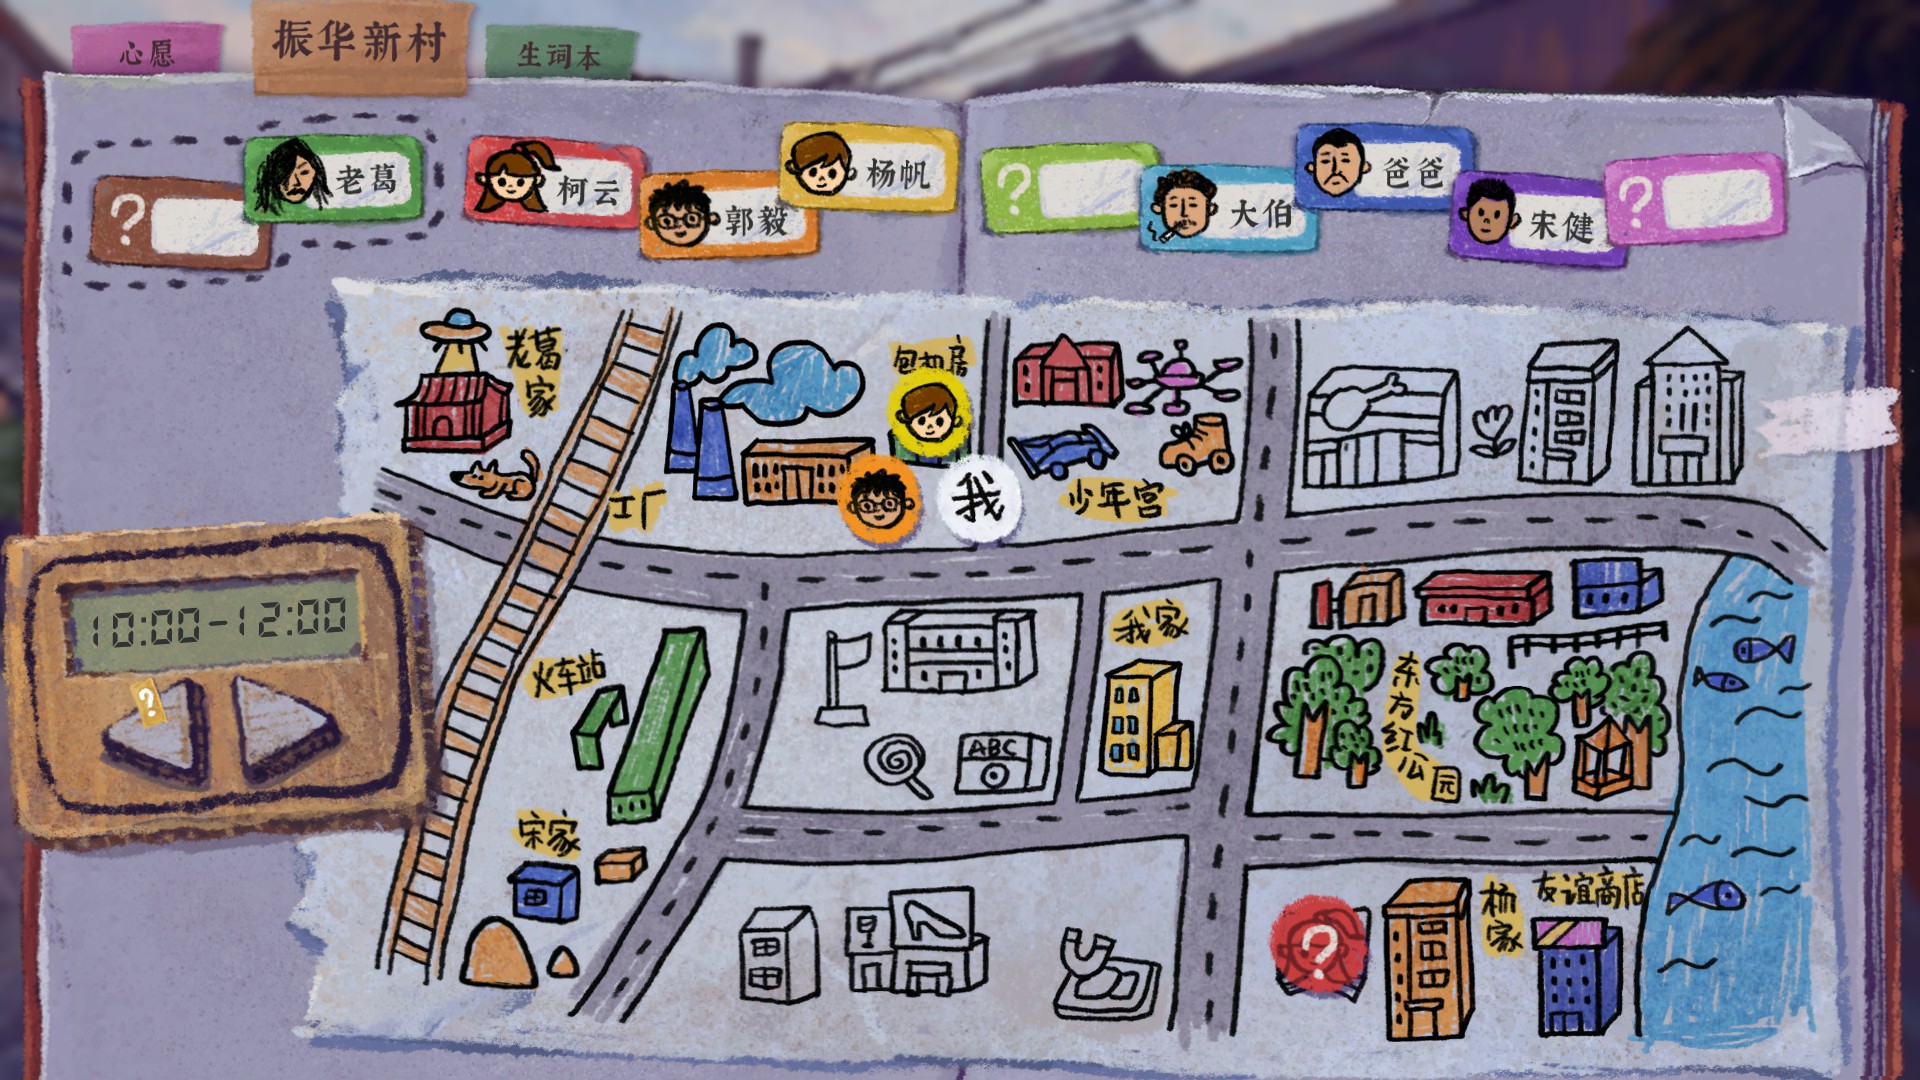 遊戲中的地圖會顯示每一個時間段裡的人大概或確定在哪裡。